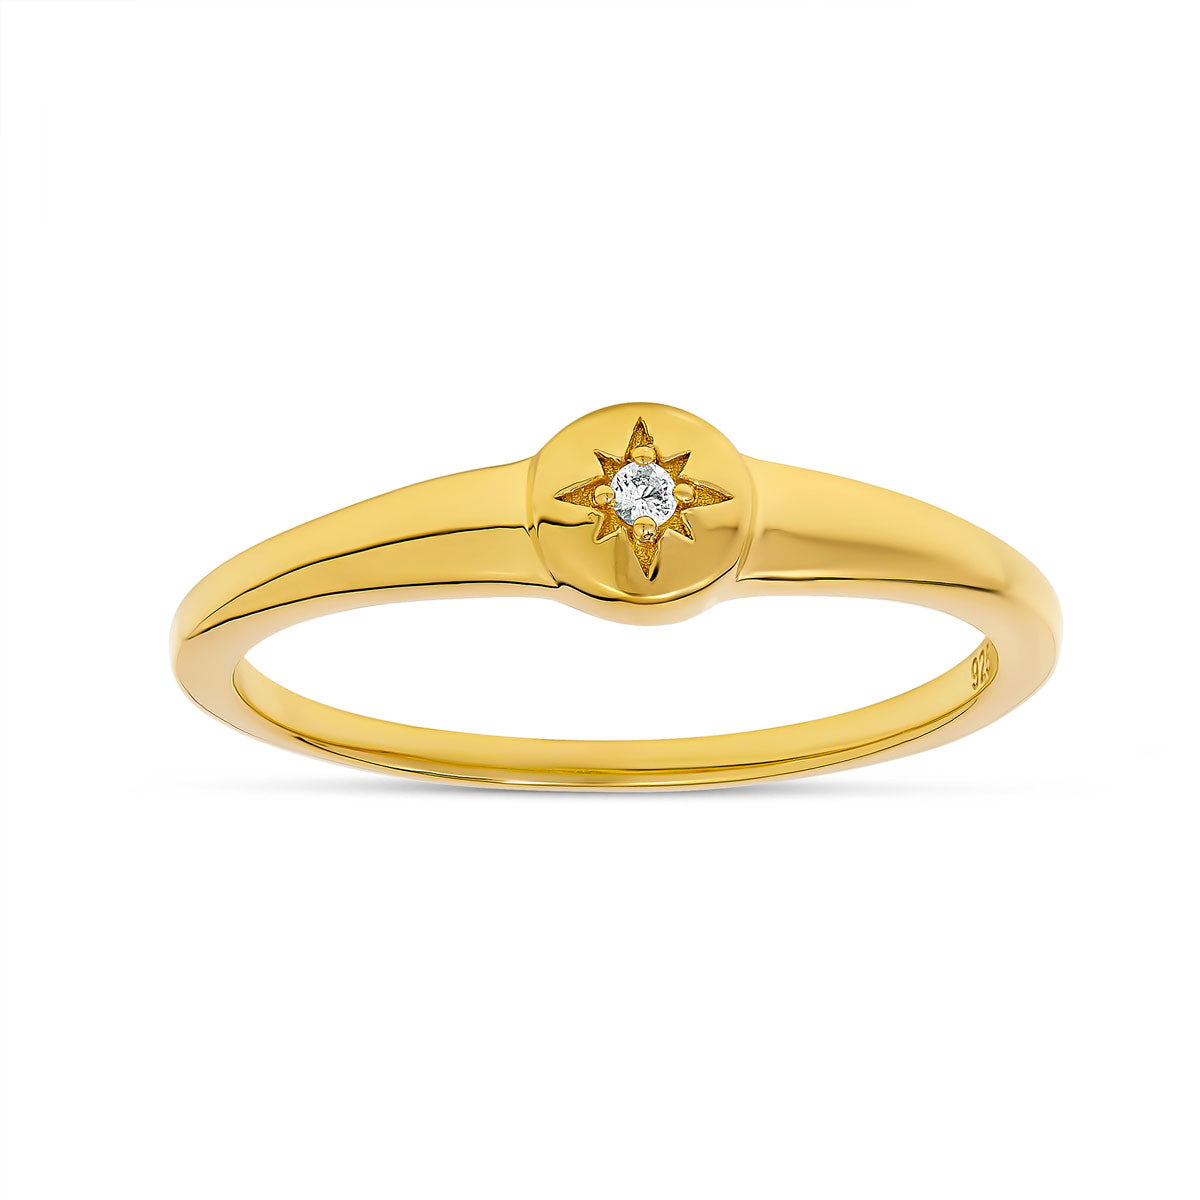 Vega Star White Topaz Ring Gold